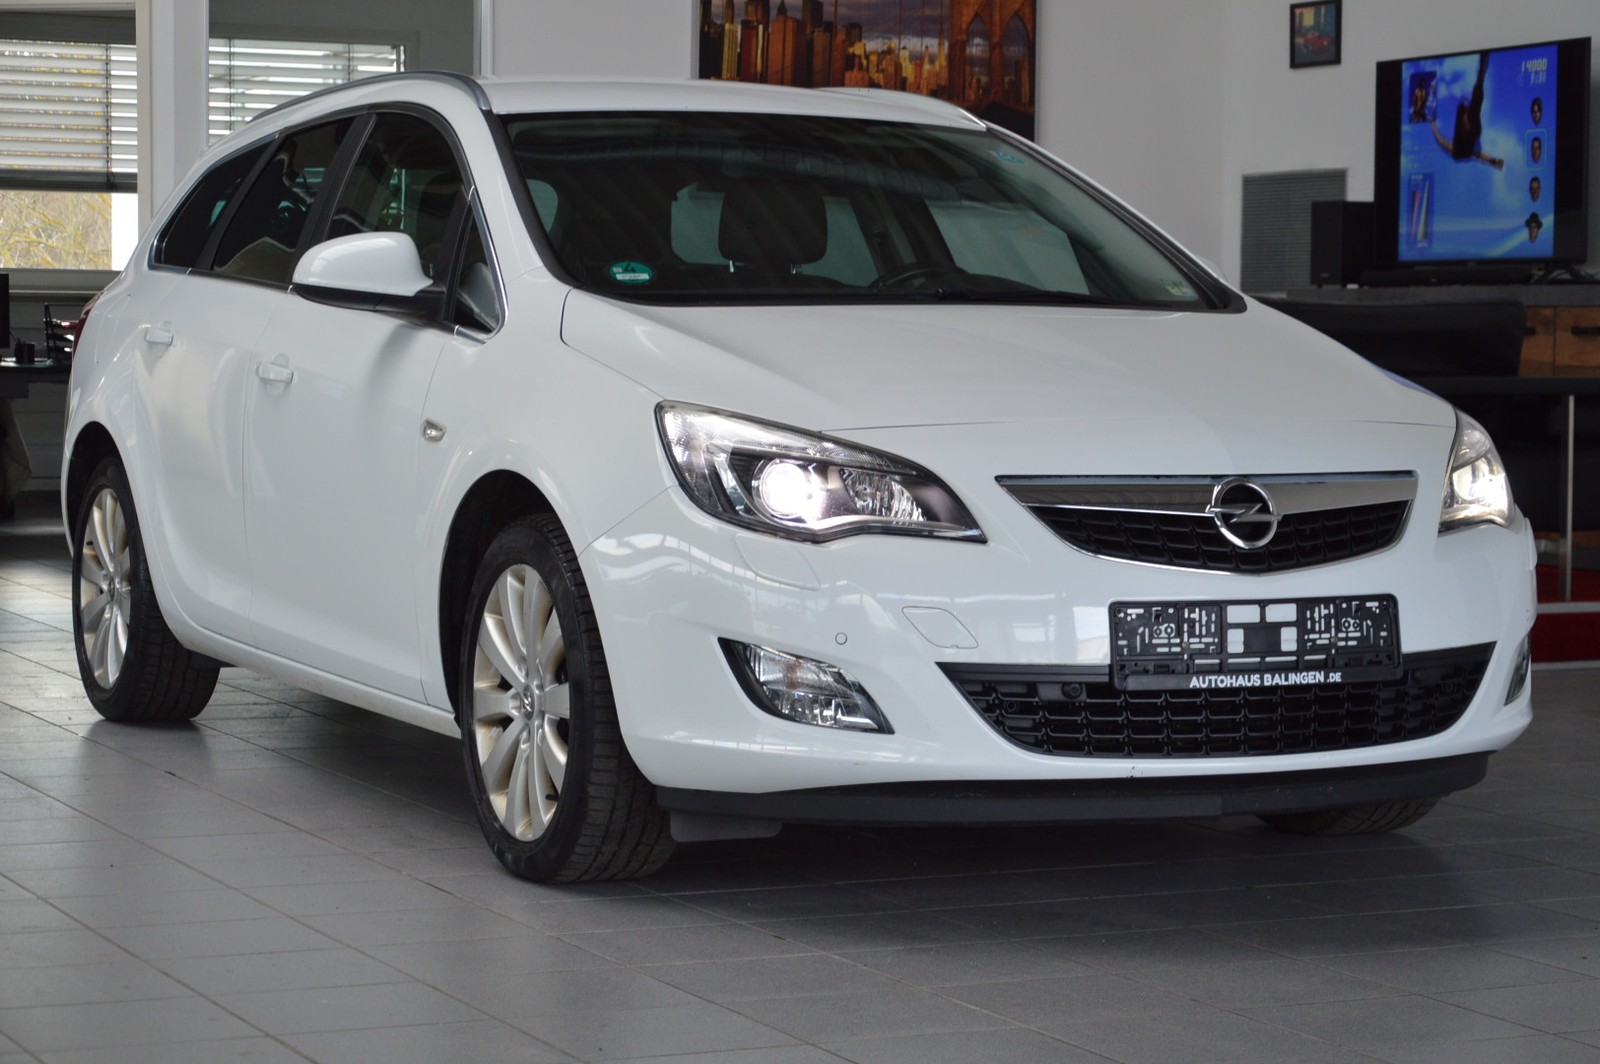 Opel Astra J Sports Tourer gebraucht kaufen in Nagold Preis 9990 eur -  Int.Nr.: 11288 VERKAUFT